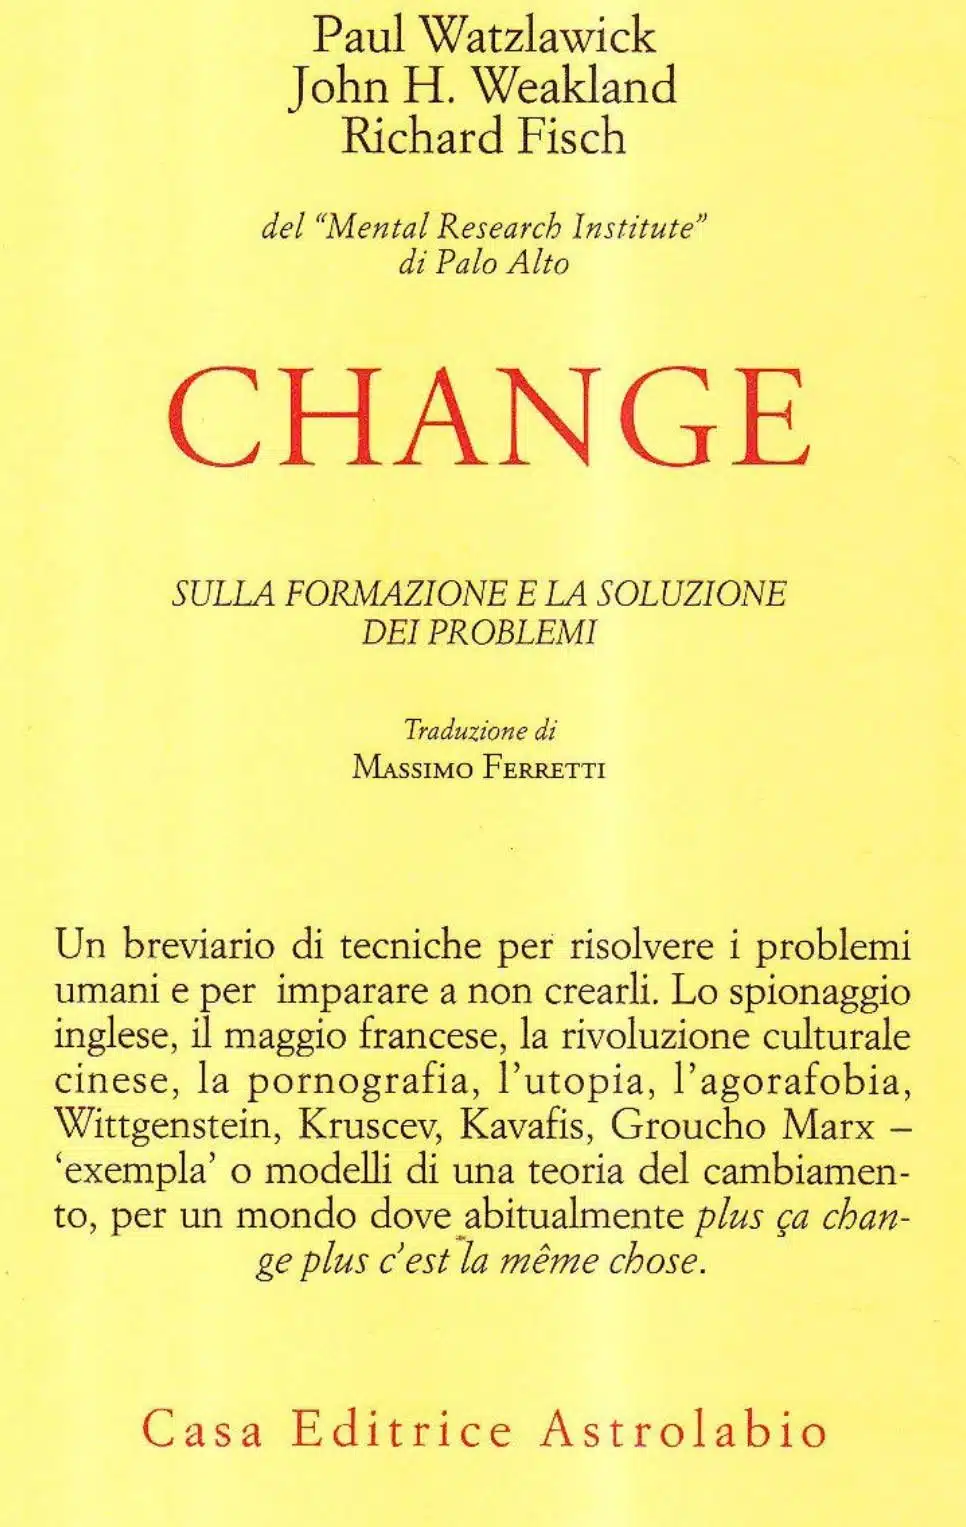 Change sulla formazione e la soluzione dei problemi recensione del libro Featured